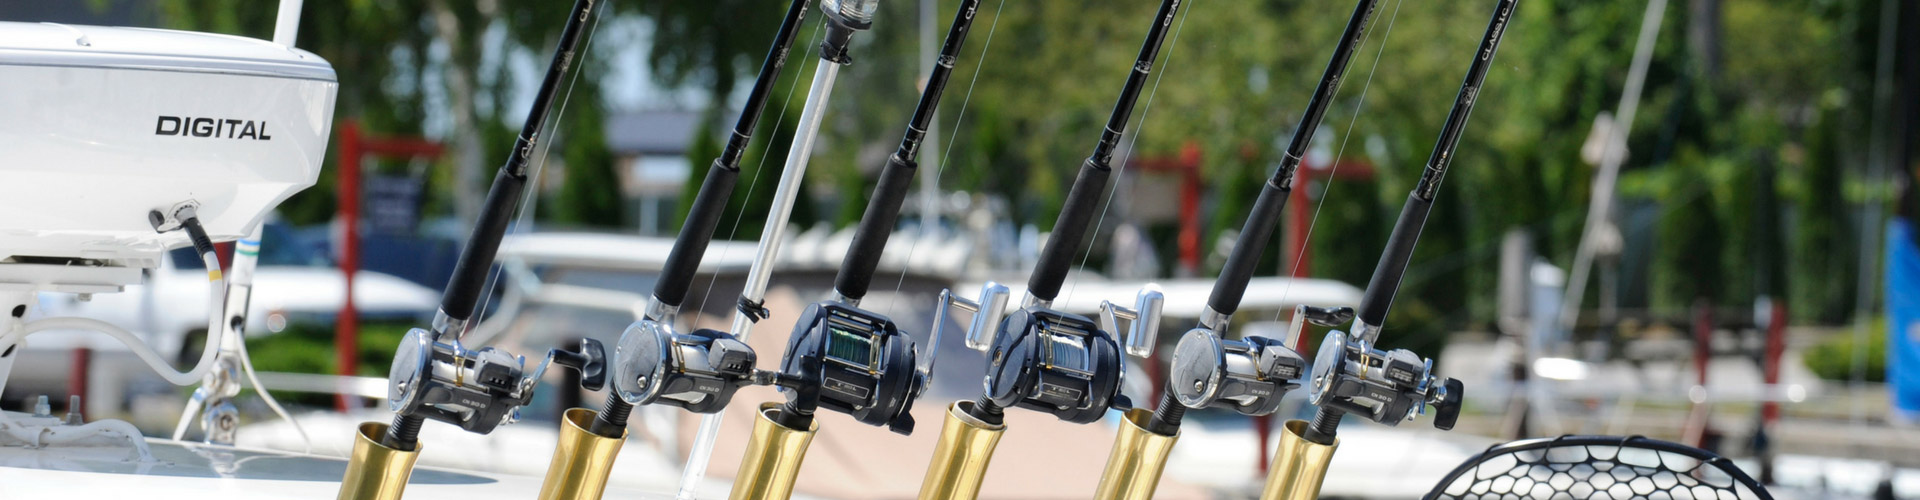 Fishing equipment